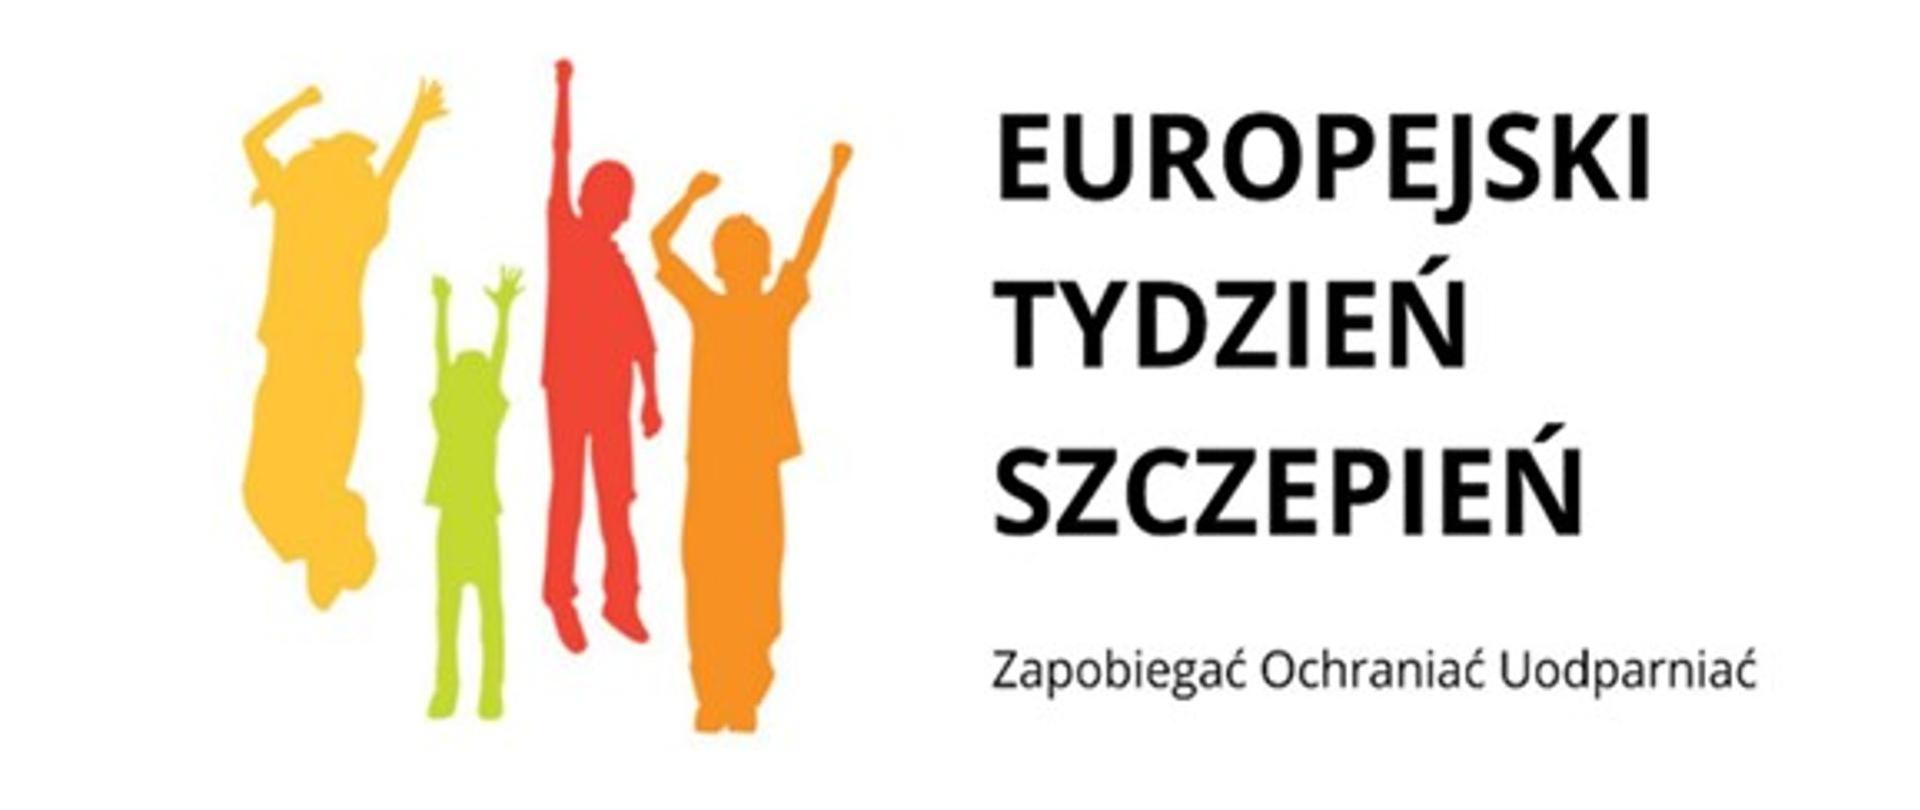 Grafika przedstawia kontury 4 osób oraz napis Europejski Tydzień Szczepień "Zapobiegać Ochraniać Uodparniać"